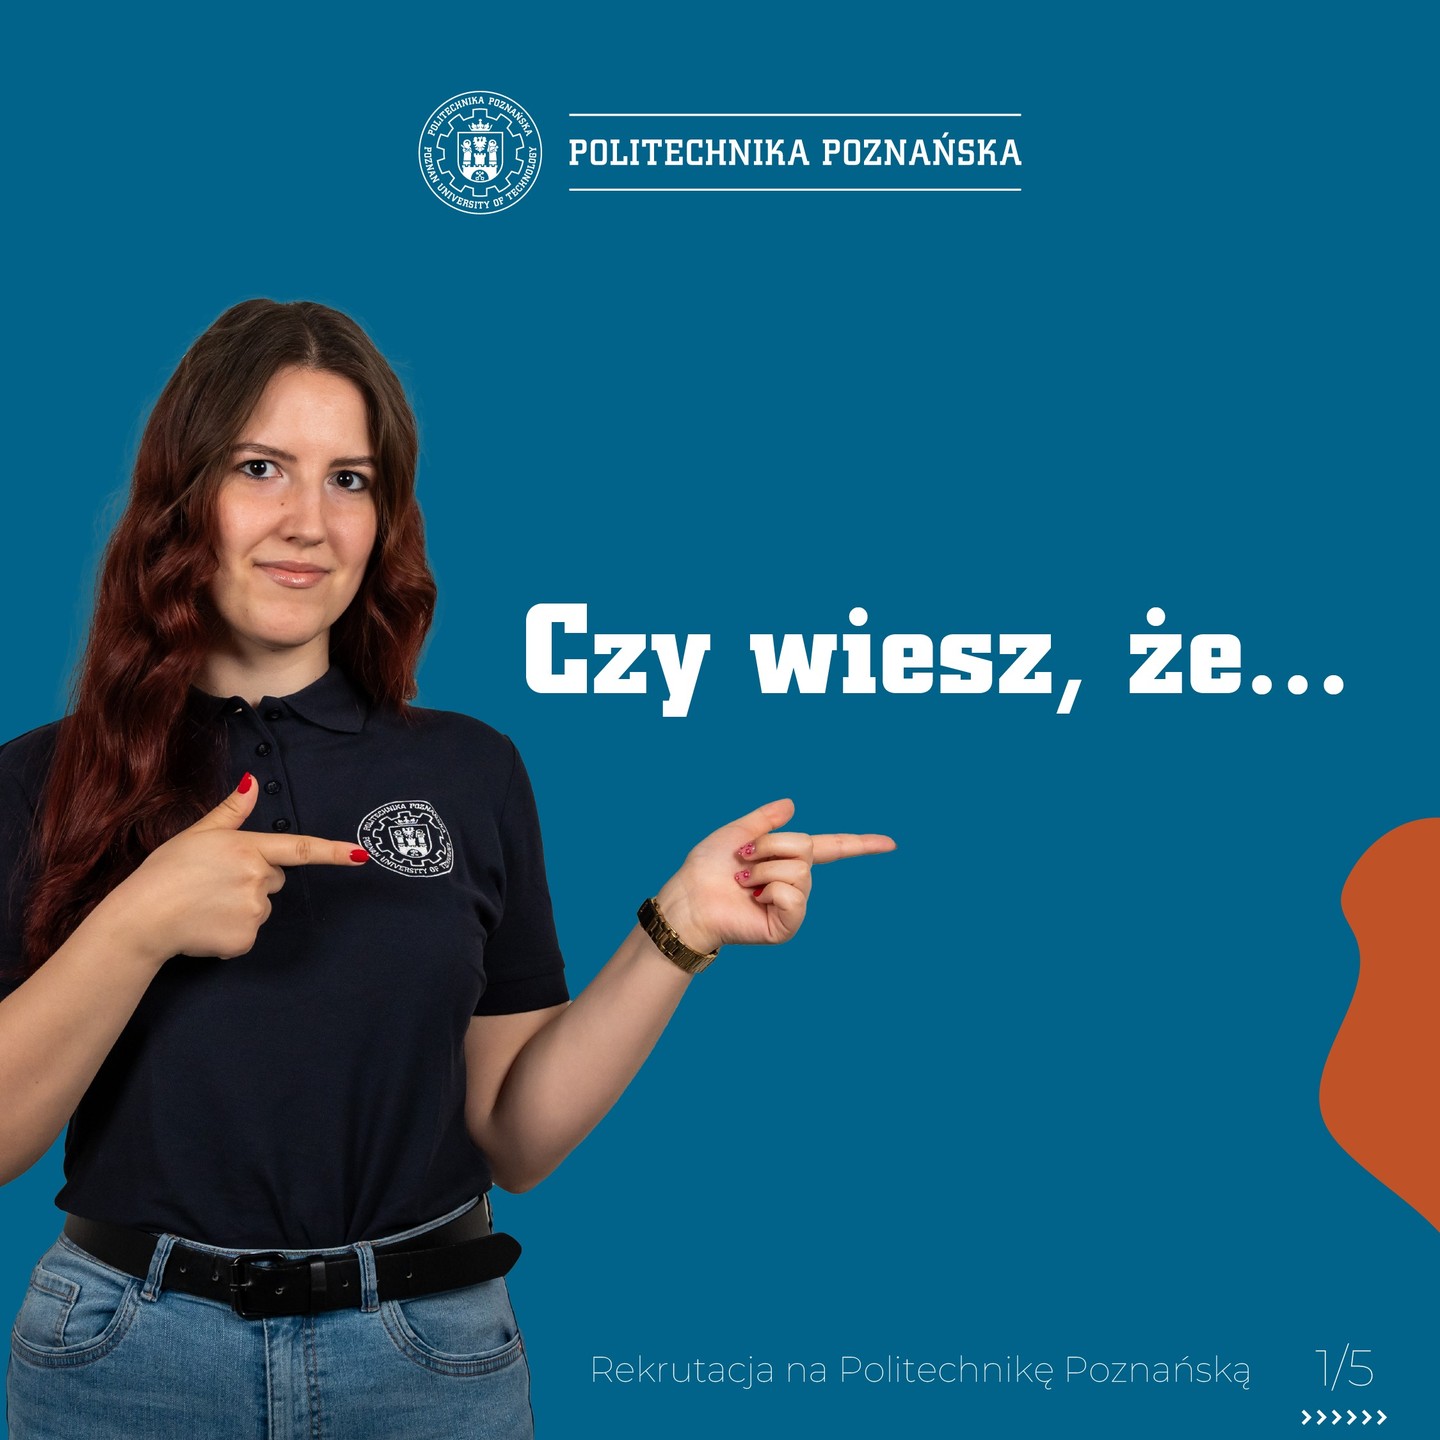 #RekrutacjanaPP #wartotustudiować 
Masz pytania dotyczące rekrutacji? 
Tel: +48 61 665 3548
mail: rekrutacja@put.poznan.pl

Dowiedz się więcej 👇👇👇
https://www.put.poznan.pl/rekrutacja

Zarejestruj się 👇👇👇
https://rekrutacja.put.poznan.pl/

@architektura.pp 
@wimift.pp 
@wim_pp 
@wtch.pp